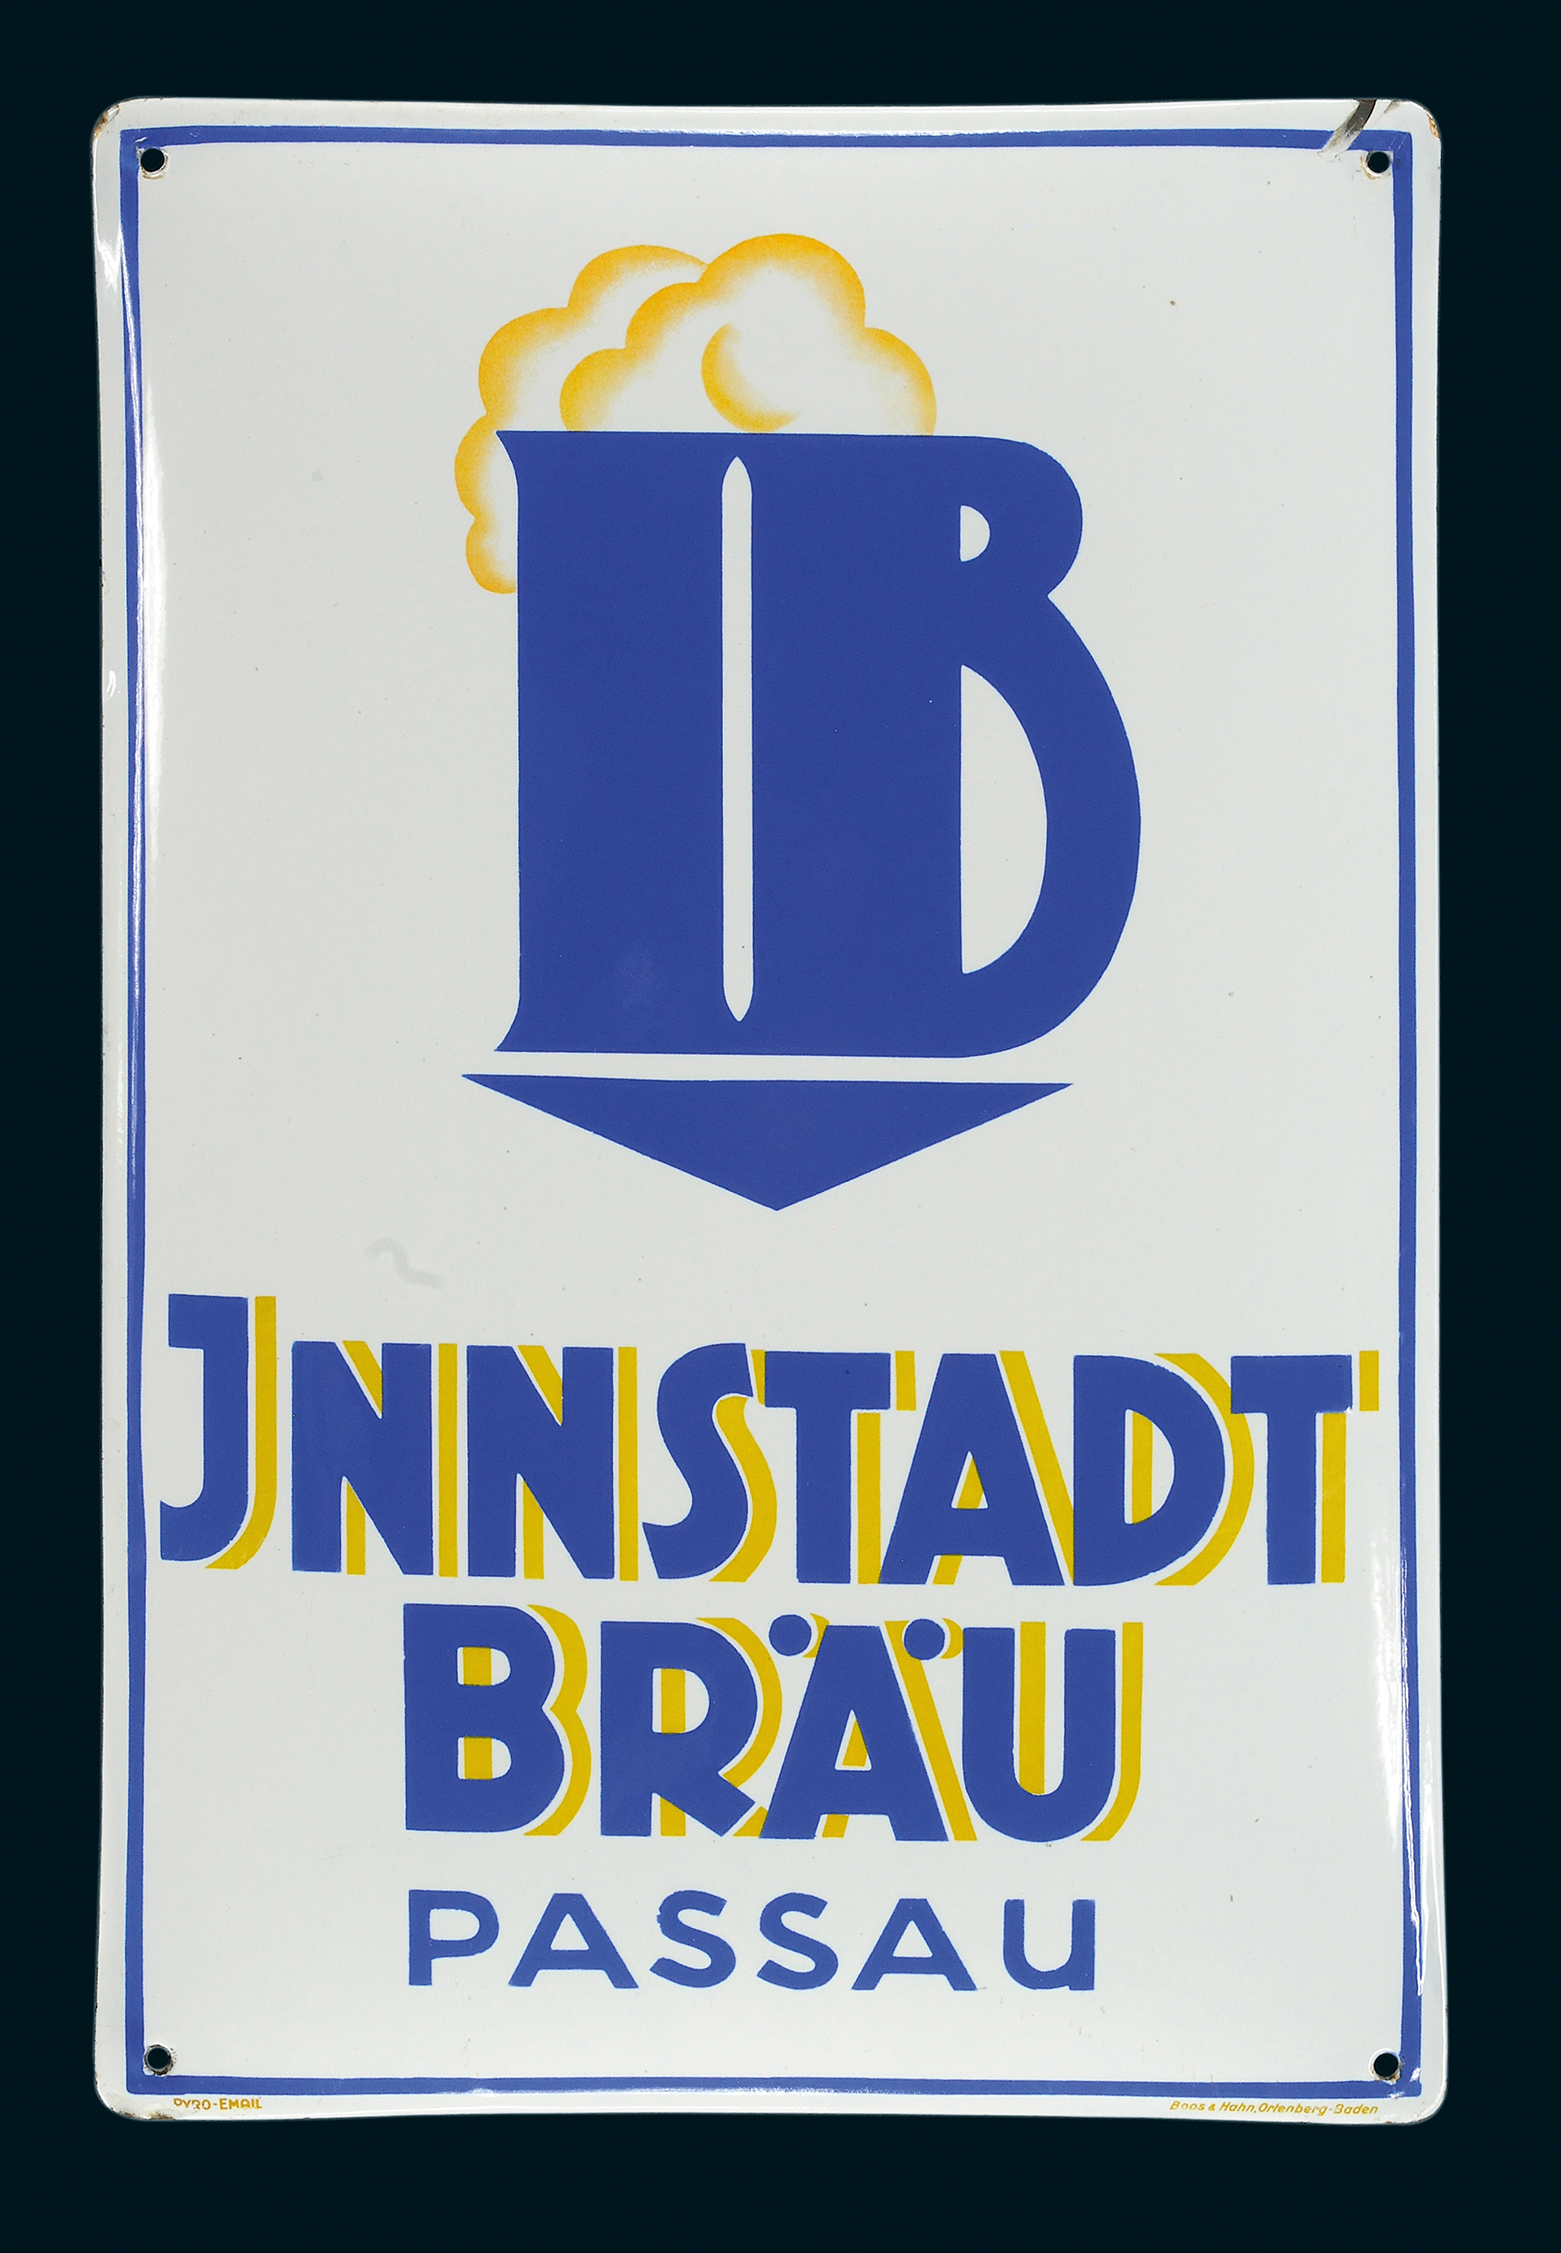 Innstadt Bräu